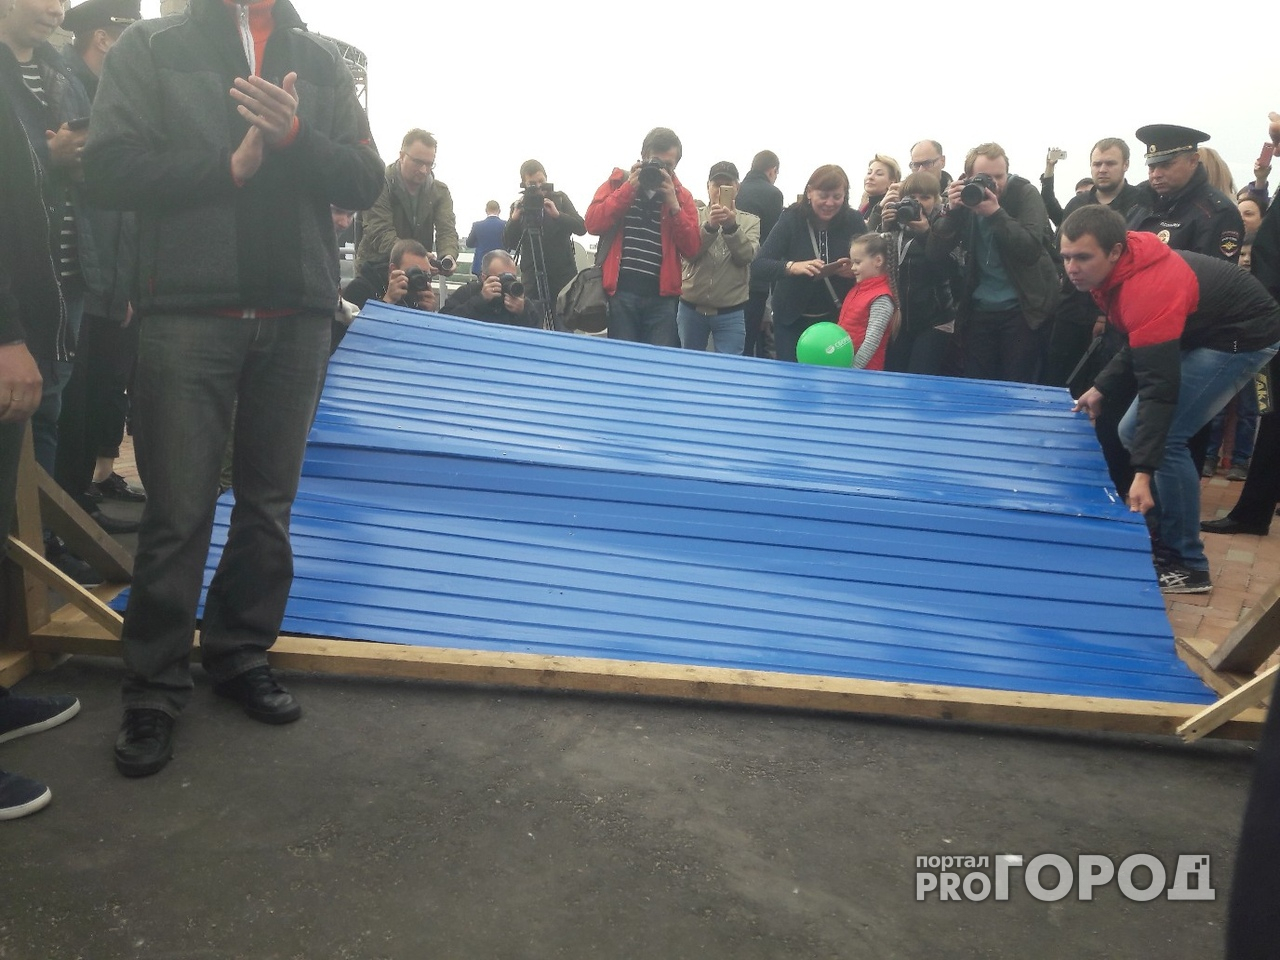 В Нижнем Новгороде пал легендарный синий забор на набережной (фото)